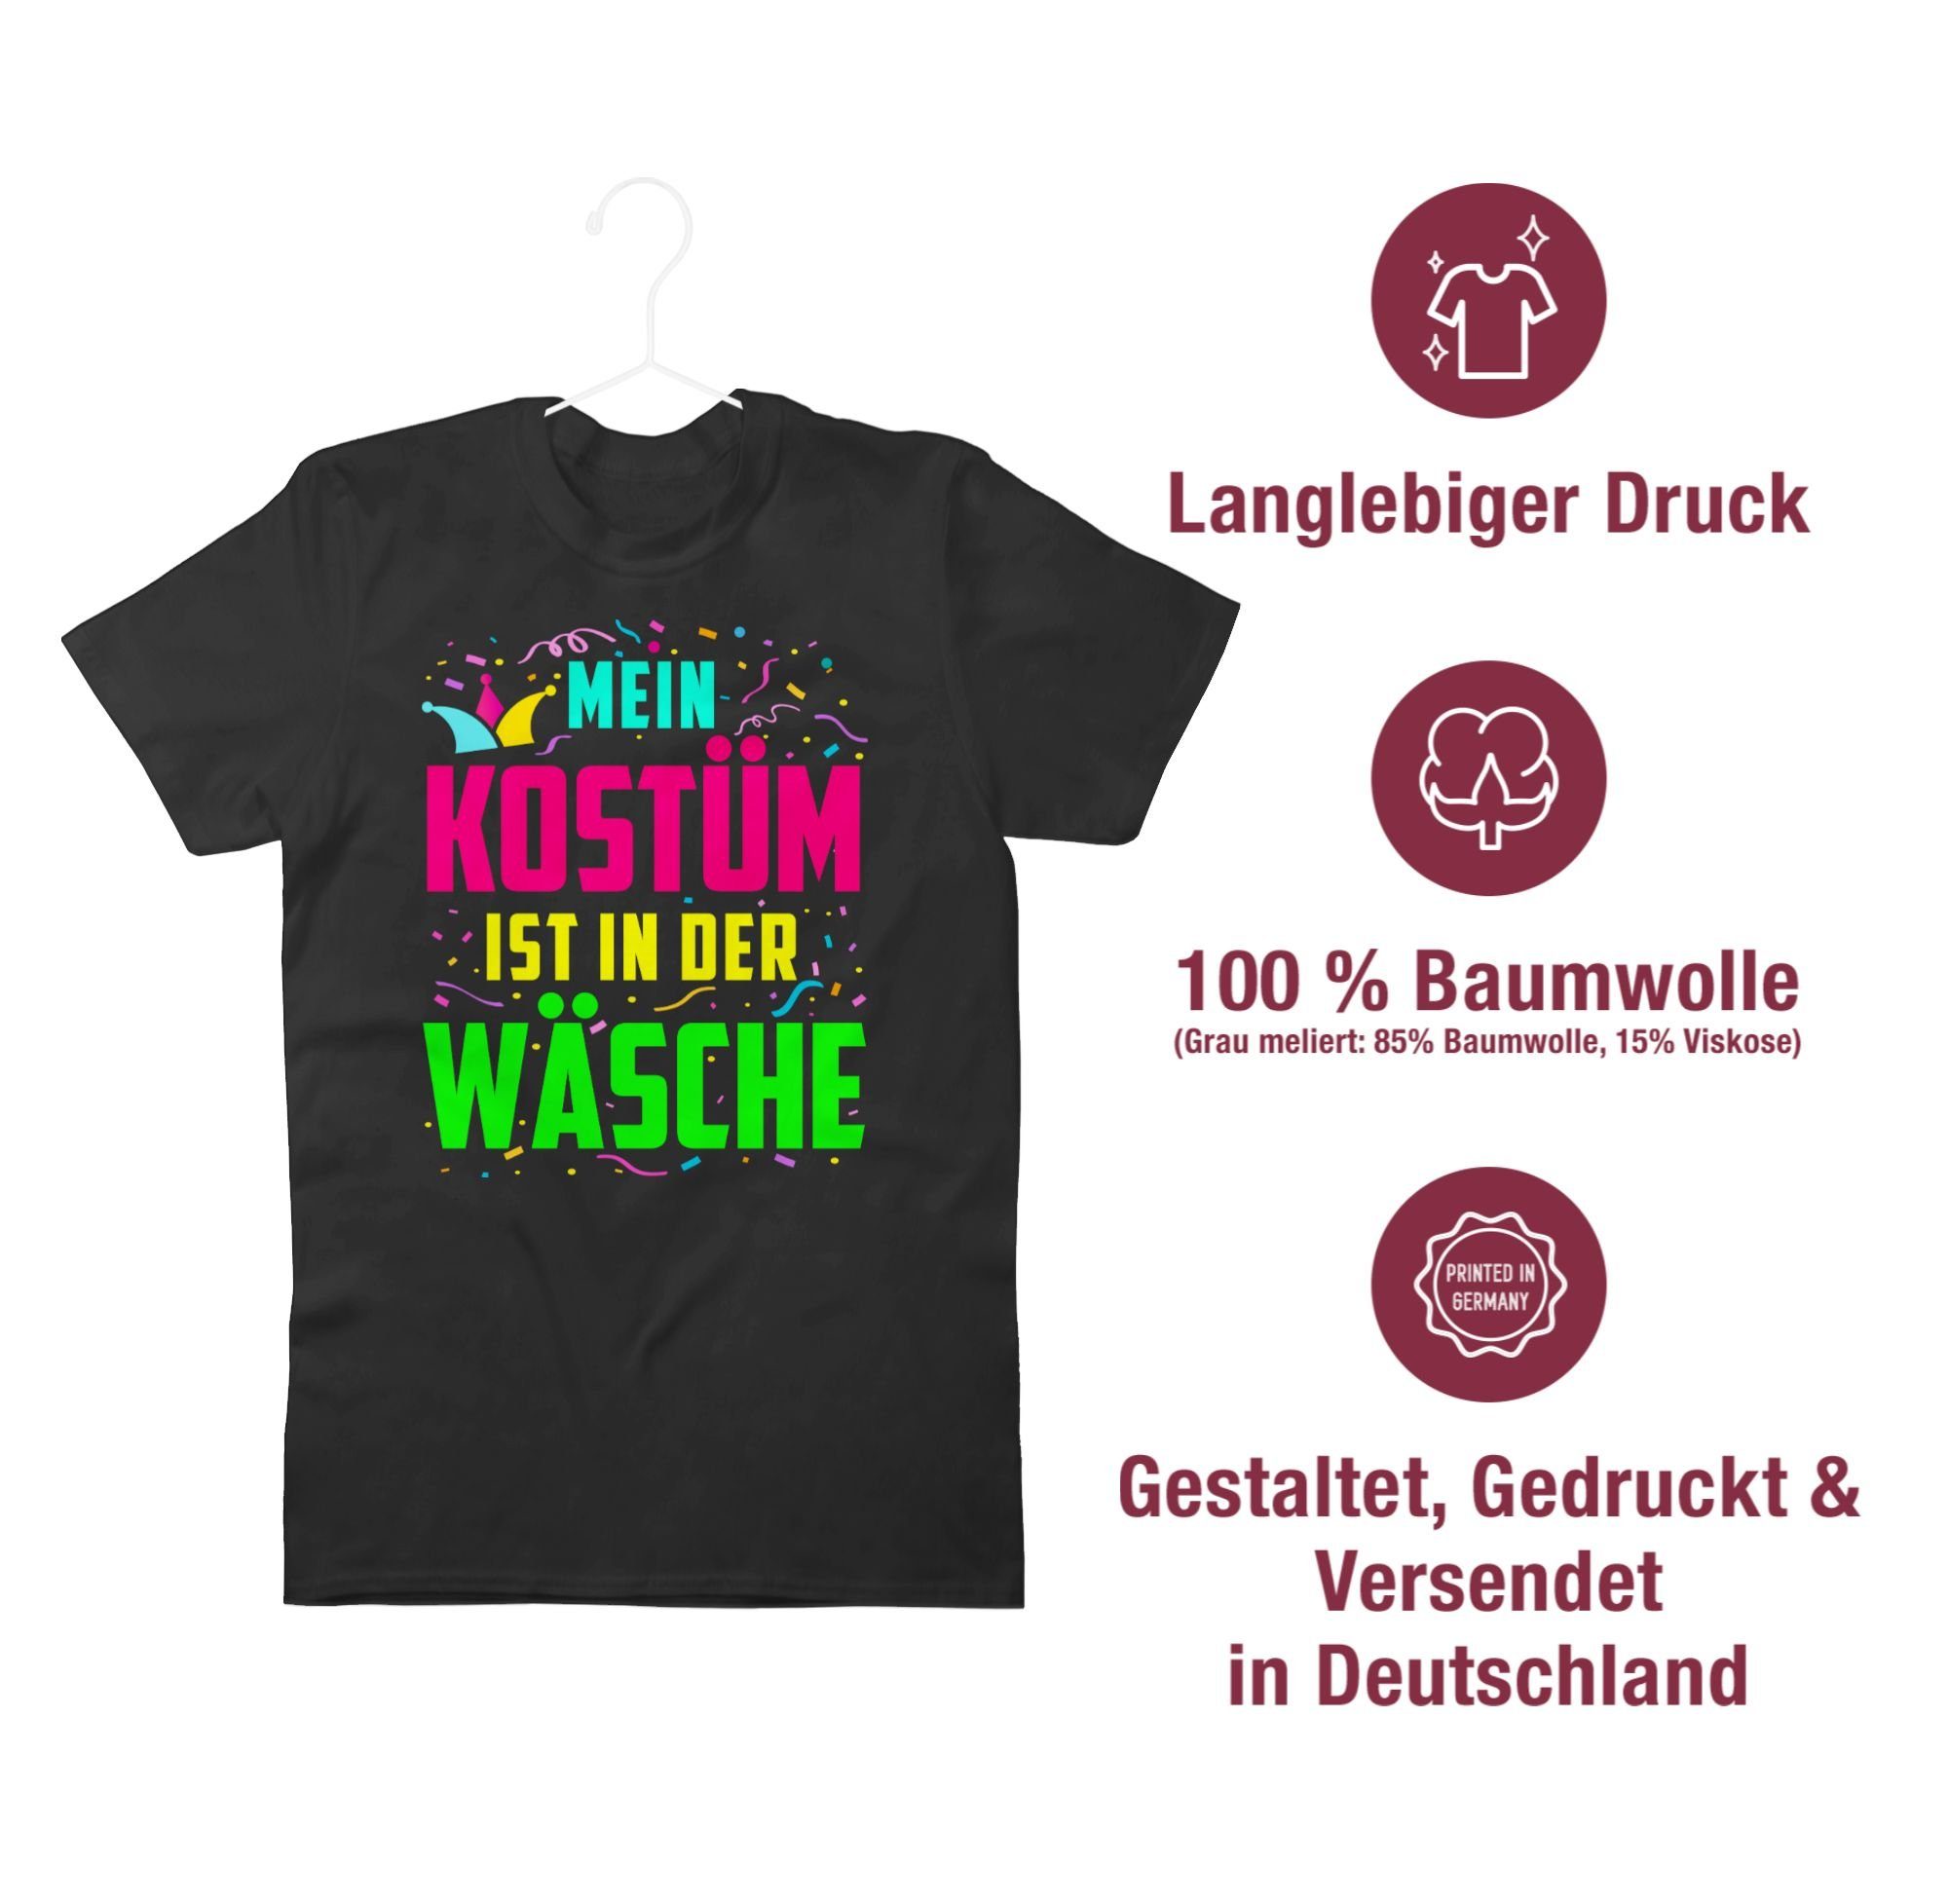 Shirtracer T-Shirt Mein & der zu Karneval 01 Wäsche in Schwarz ist Kostüm Fasching